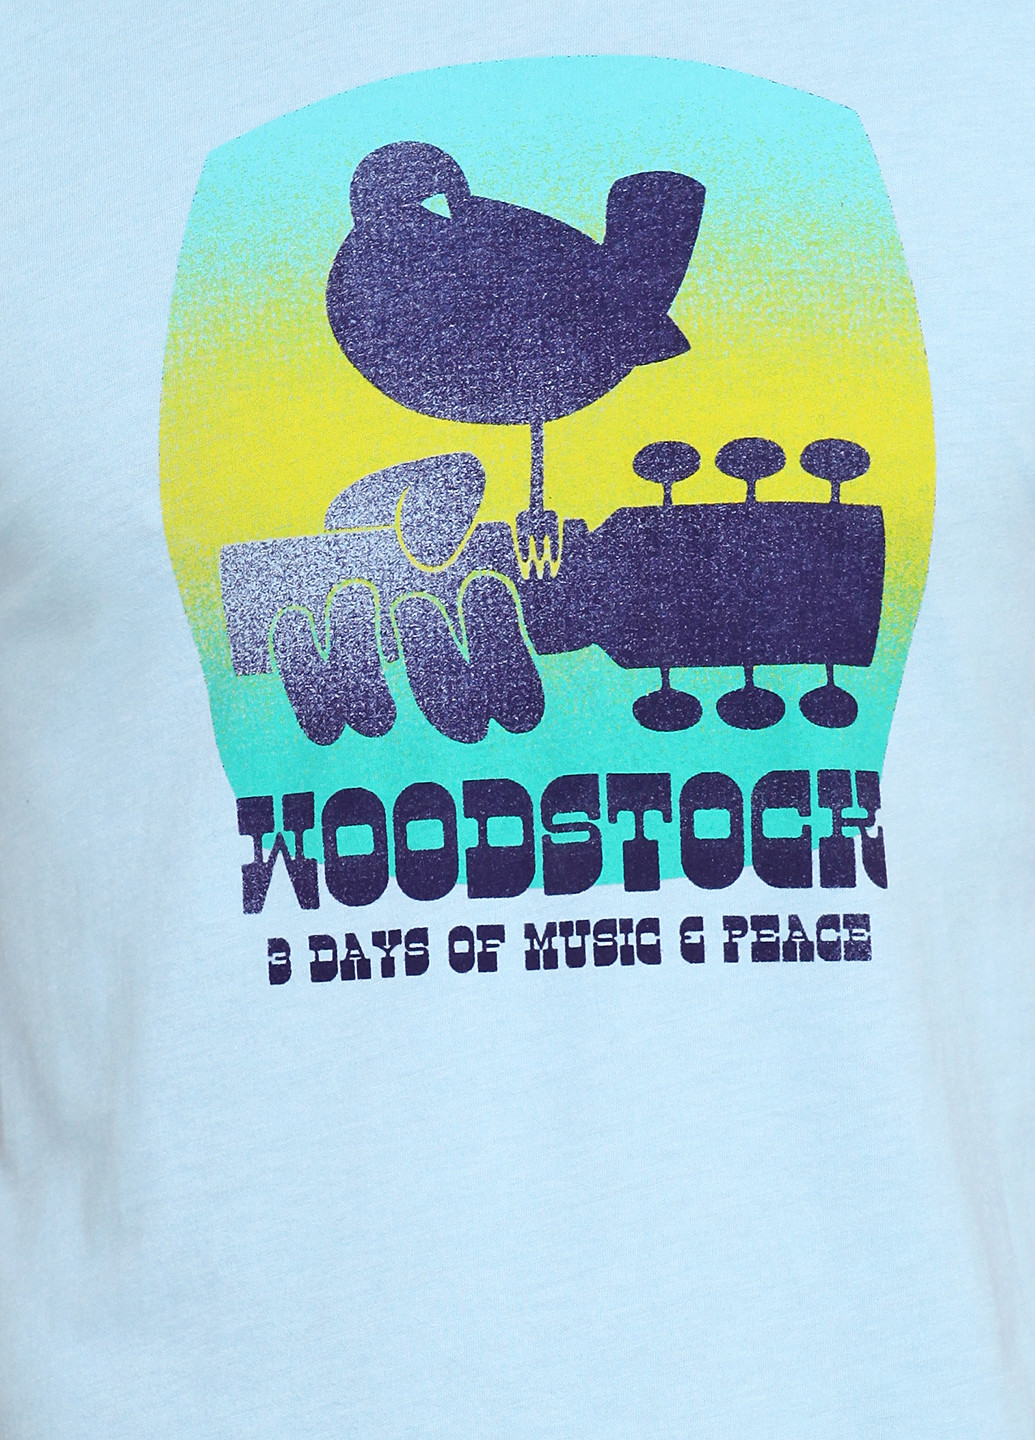 Блакитна футболка Woodstock